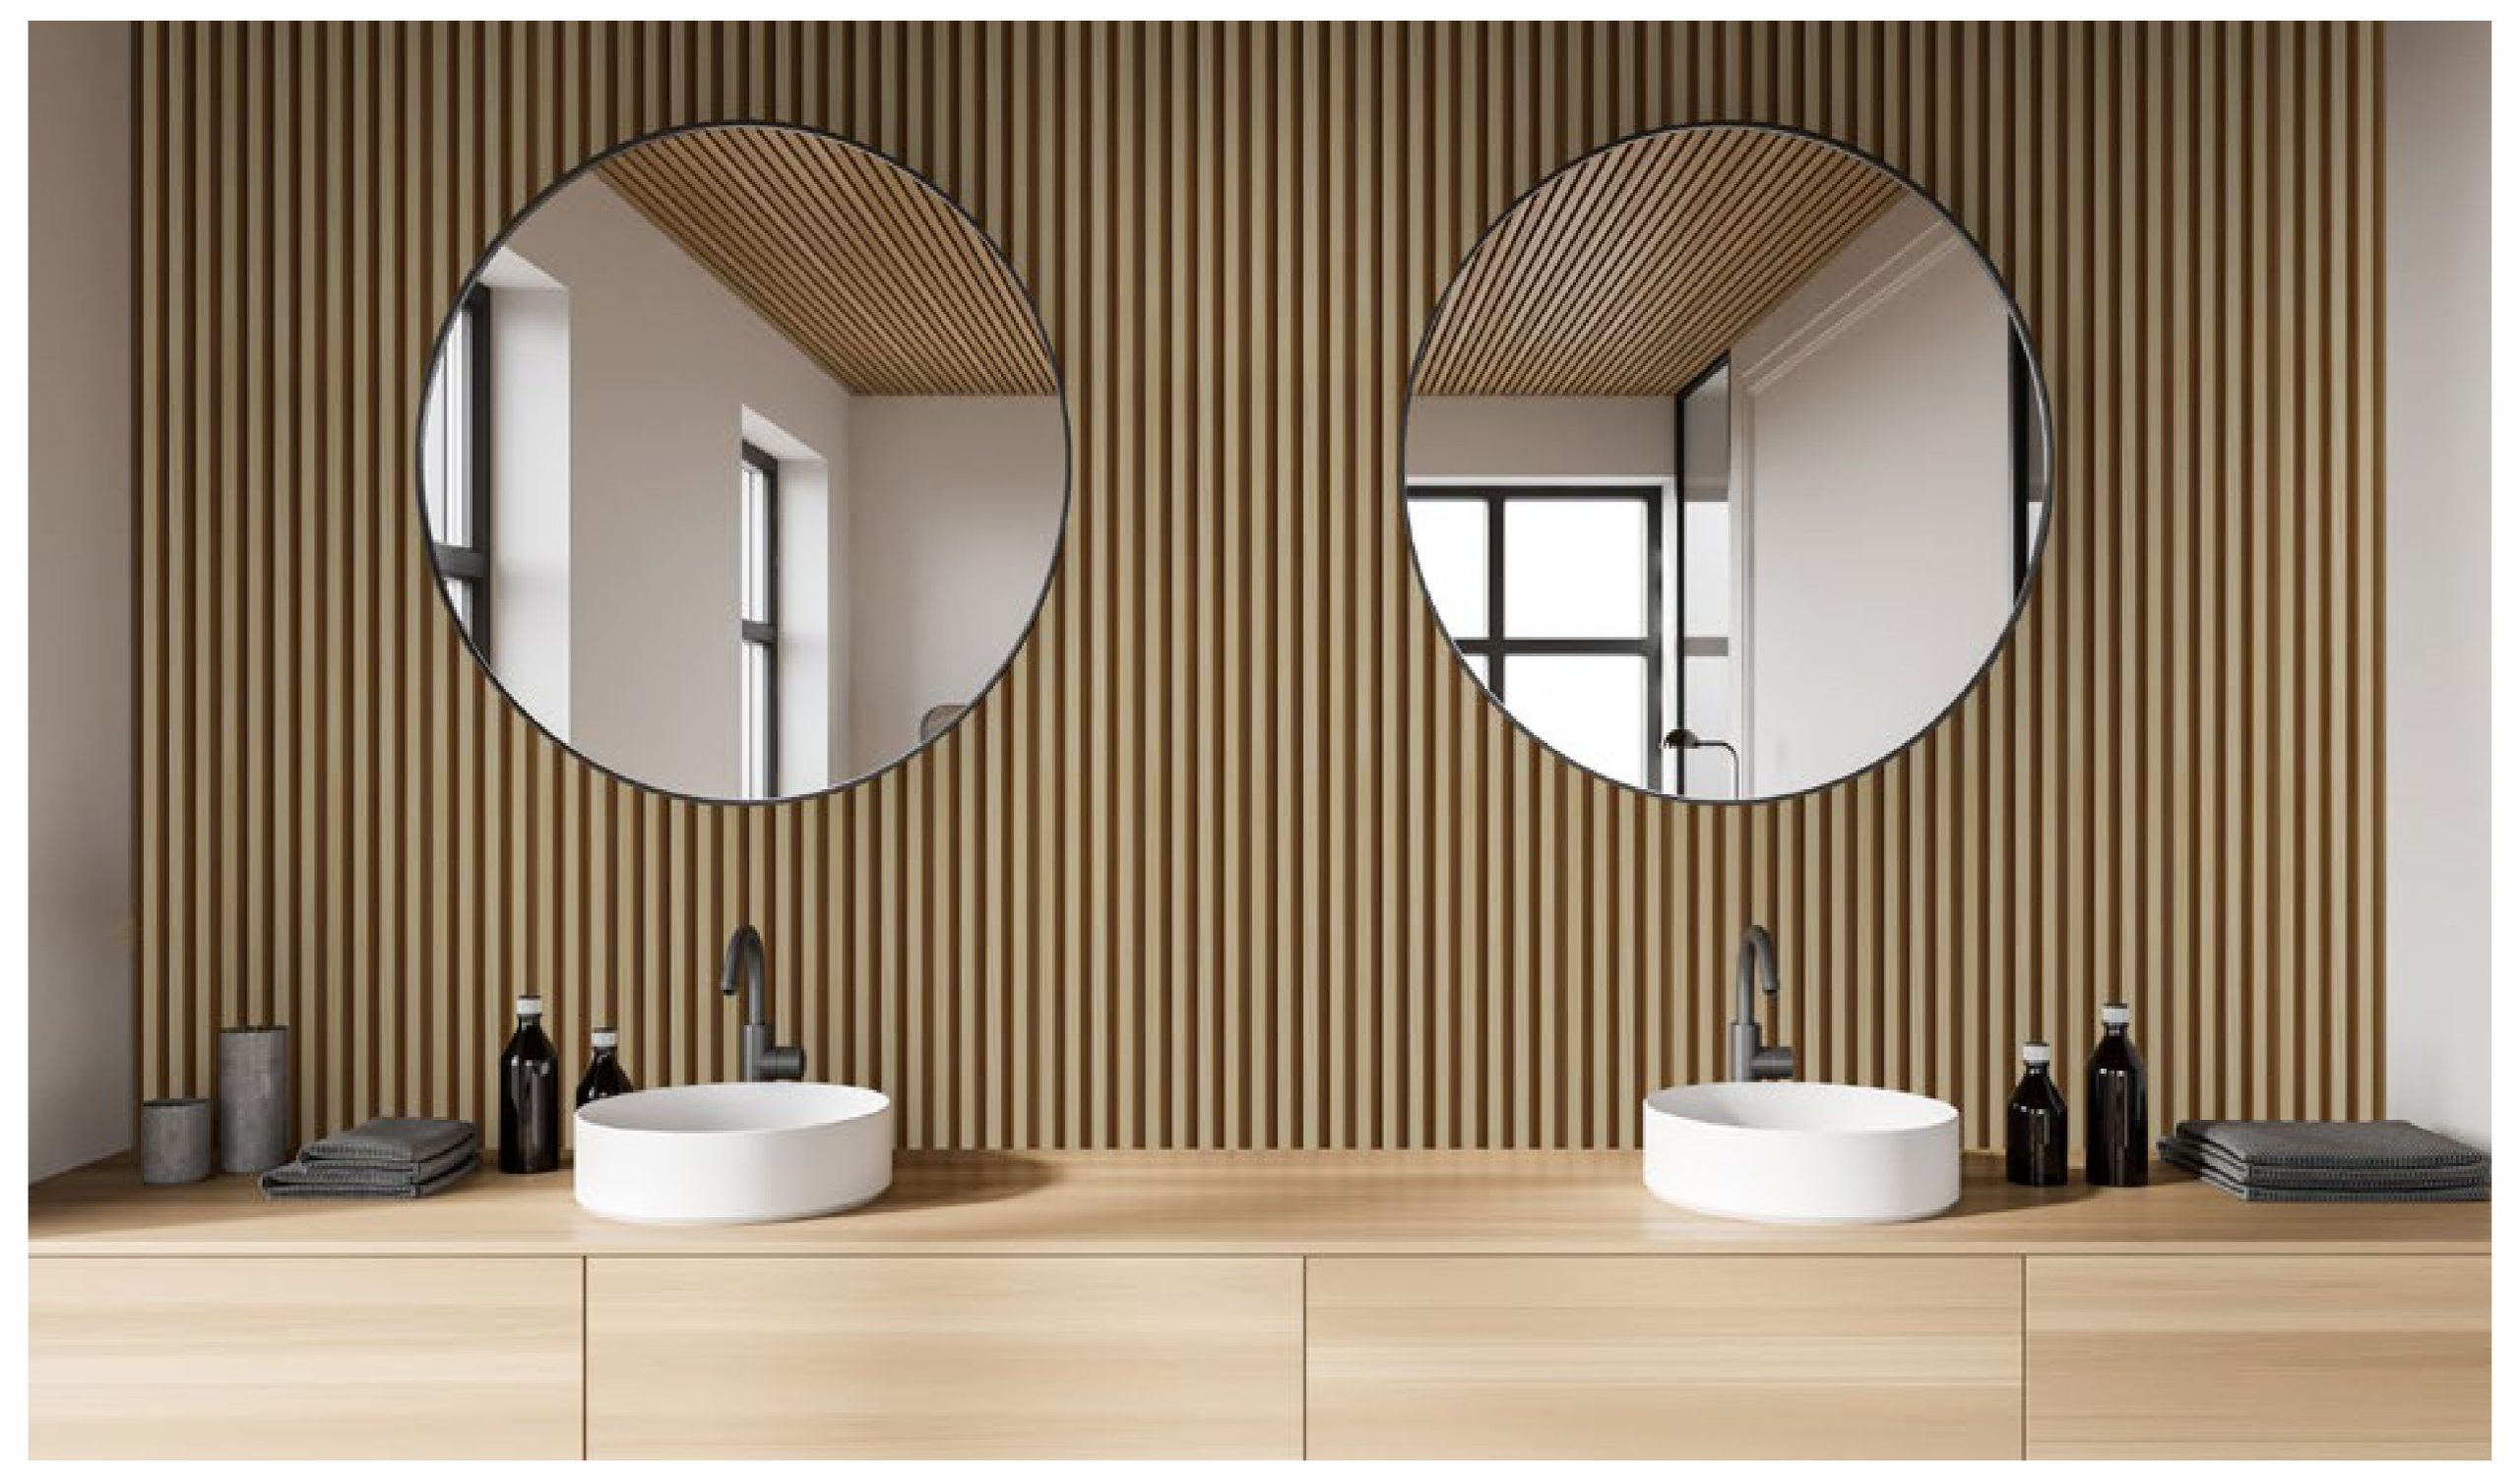 Líneas verticales, madera, wall panels, espejos, lavamanos, grifería, circular y baño.